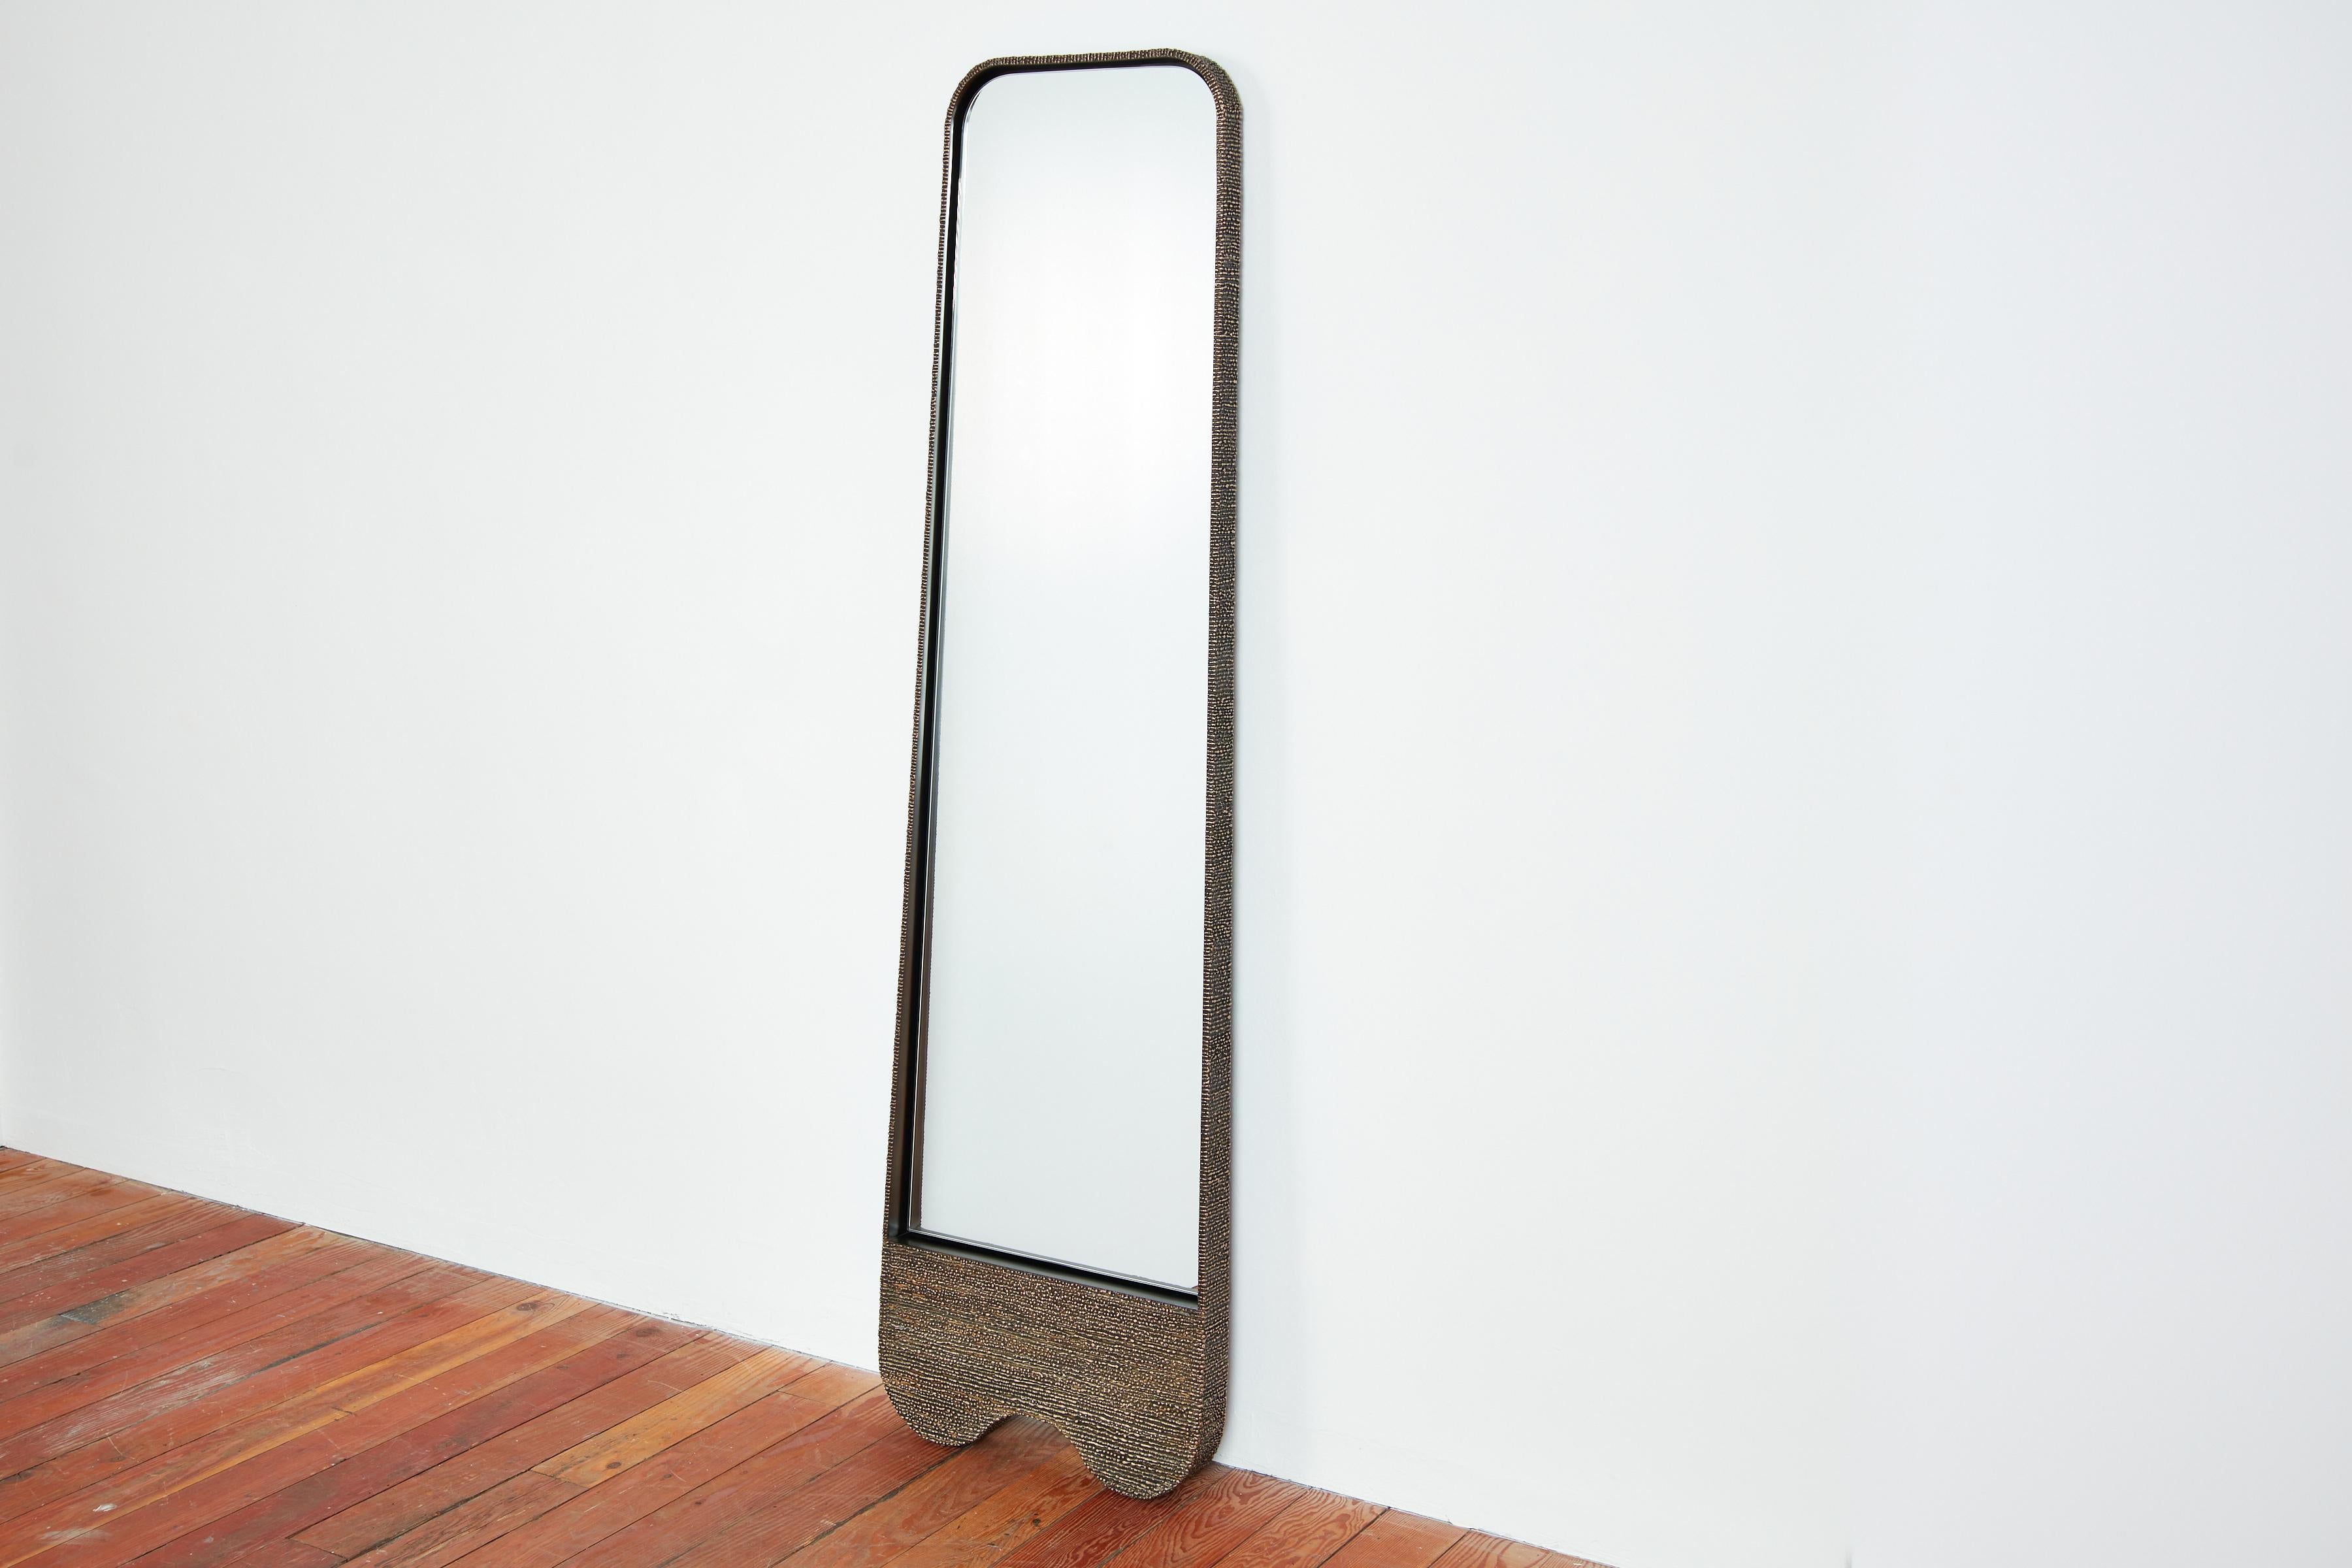 Stehender Spiegel Molten von William Emmerson
Abmessungen: T 7,6 x B 55,9 x H 203,2 cm.
MATERIALIEN: Bronze und Stahl.
 
Ein faszinierender Luxus-Spiegel, der Stahl, Bronze und eine geschmolzene Oberfläche miteinander verbindet. William Emmersons